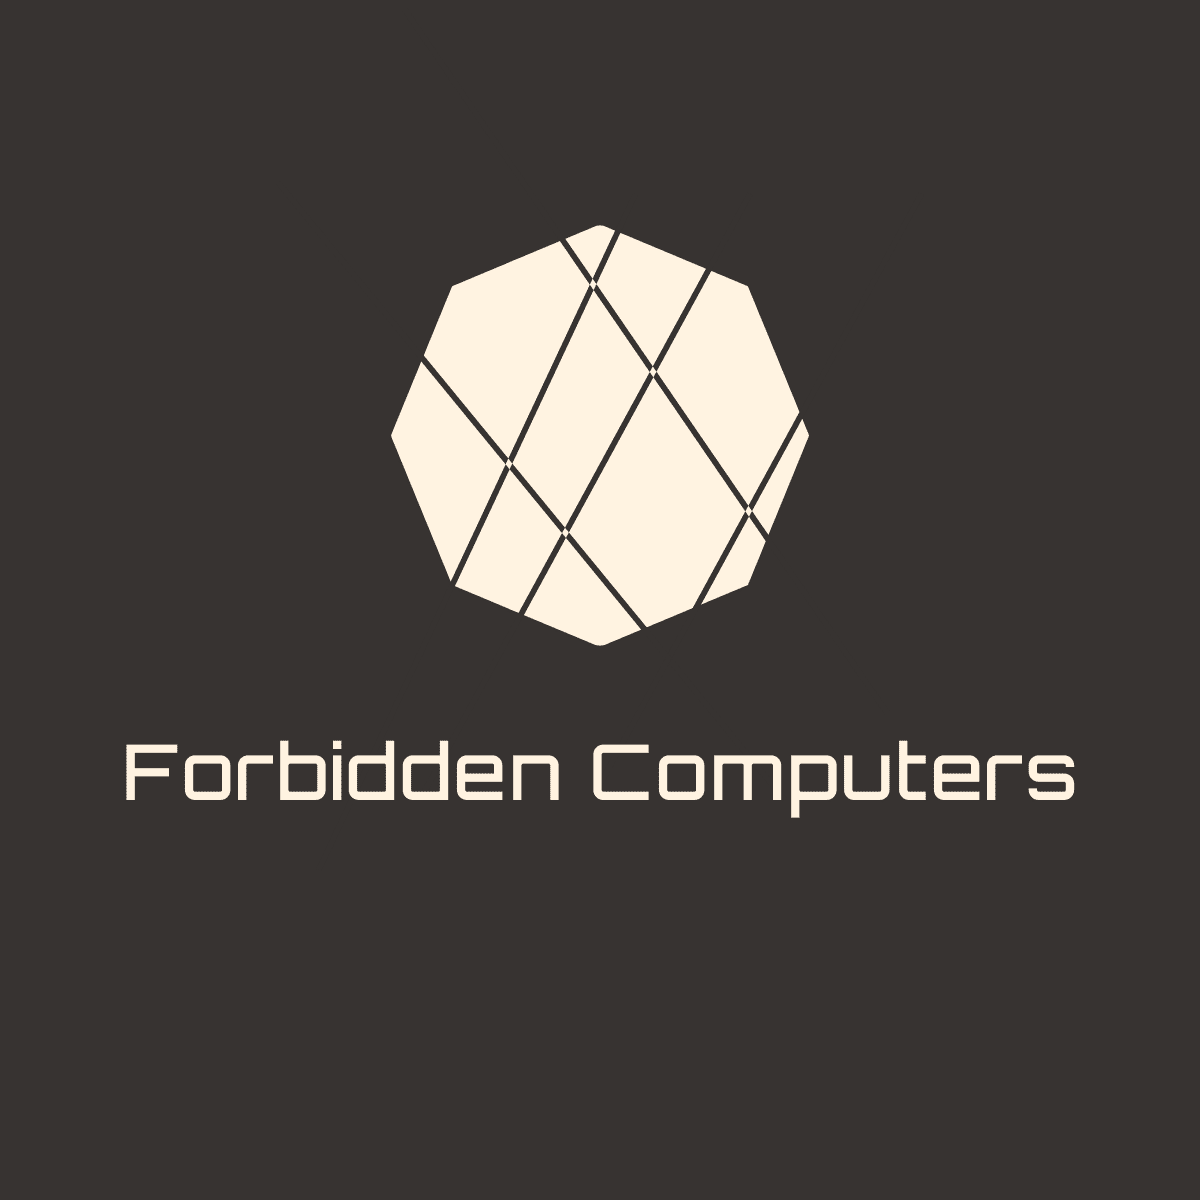 Forbidden Computers